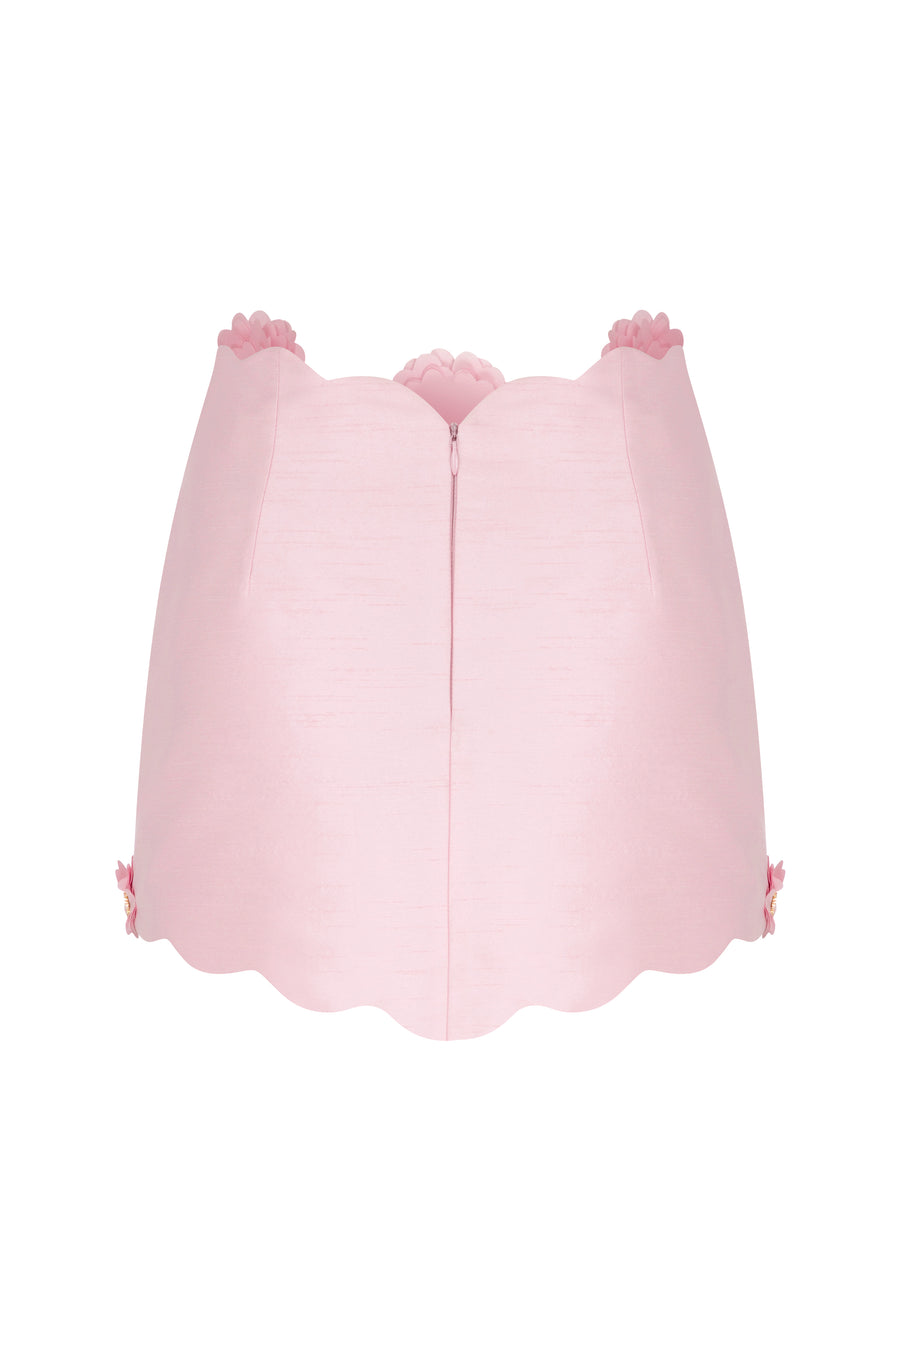 Clover Iconic Skirt